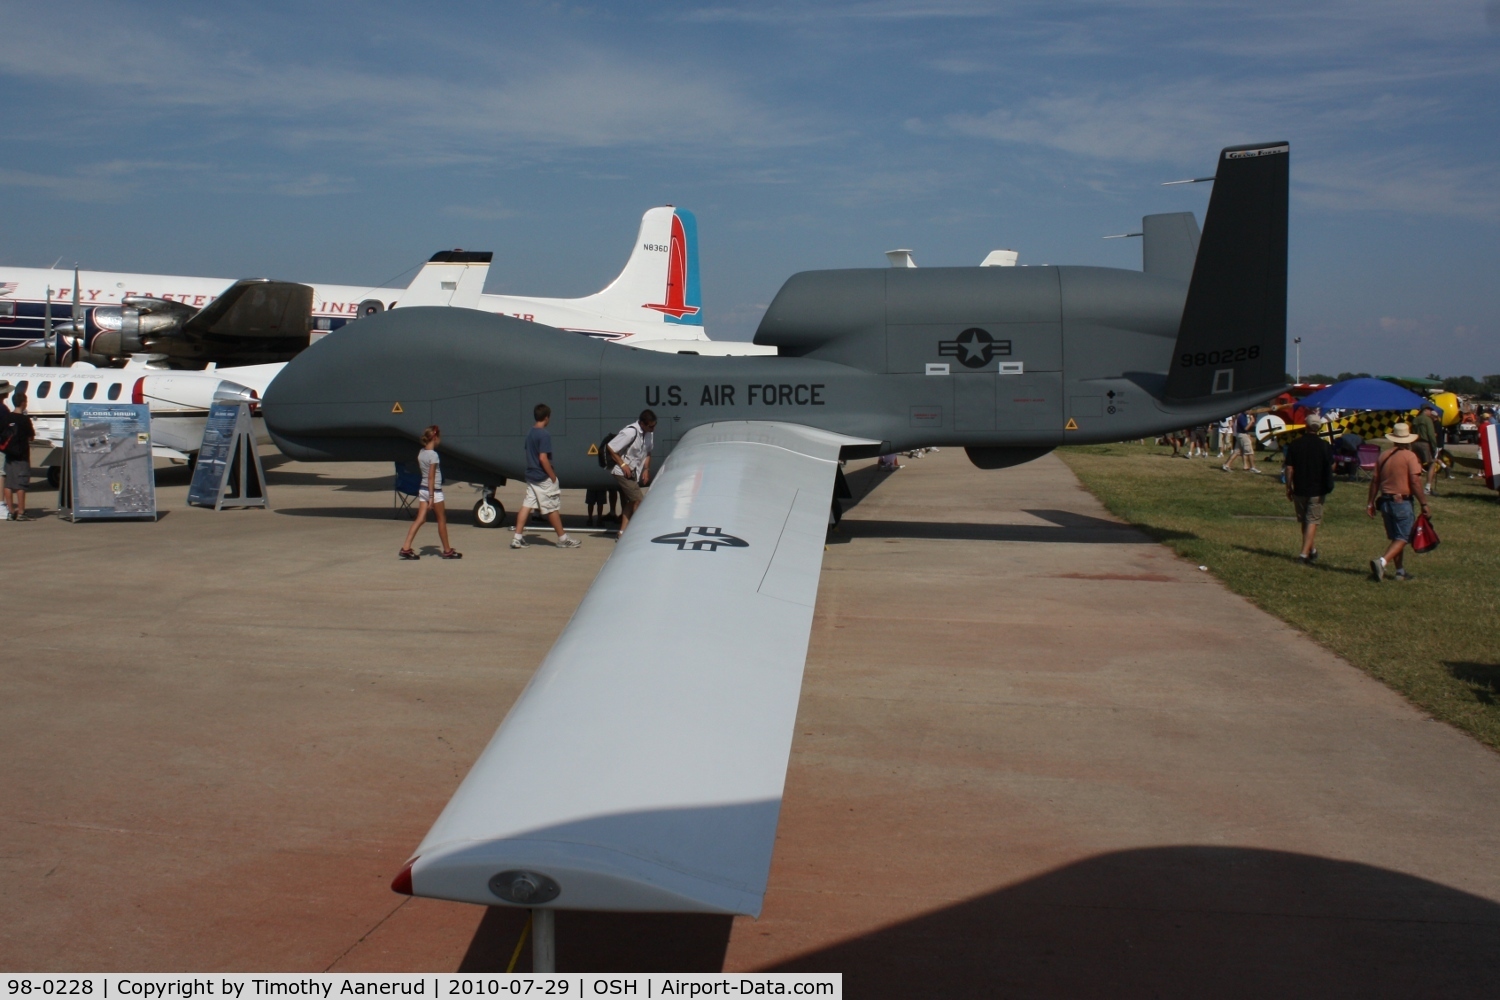 98-0228, 1998 Northrop Grumman RQ-4 Global Hawk C/N Not found 98-0228, 1998 Global Hawk UAV